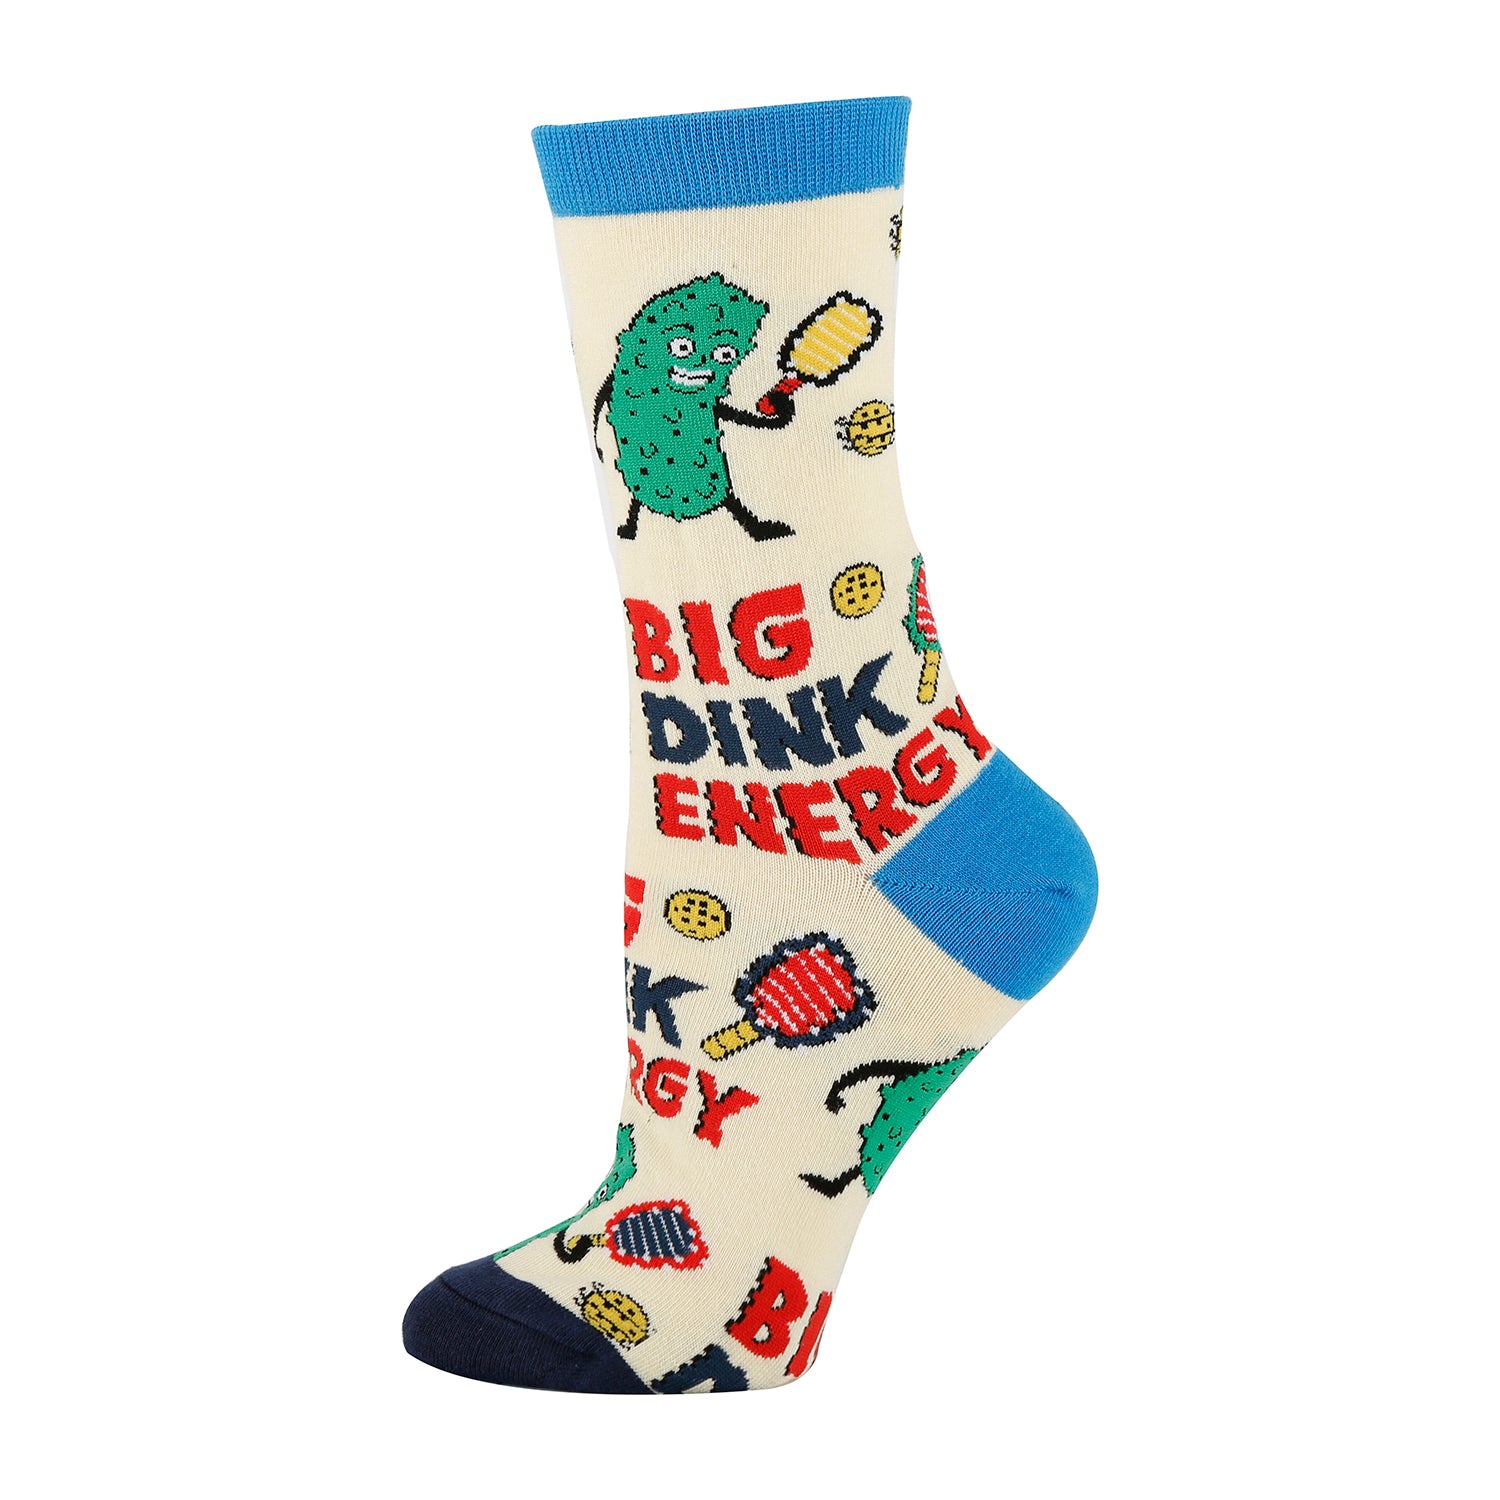 Pickel Ball Socks